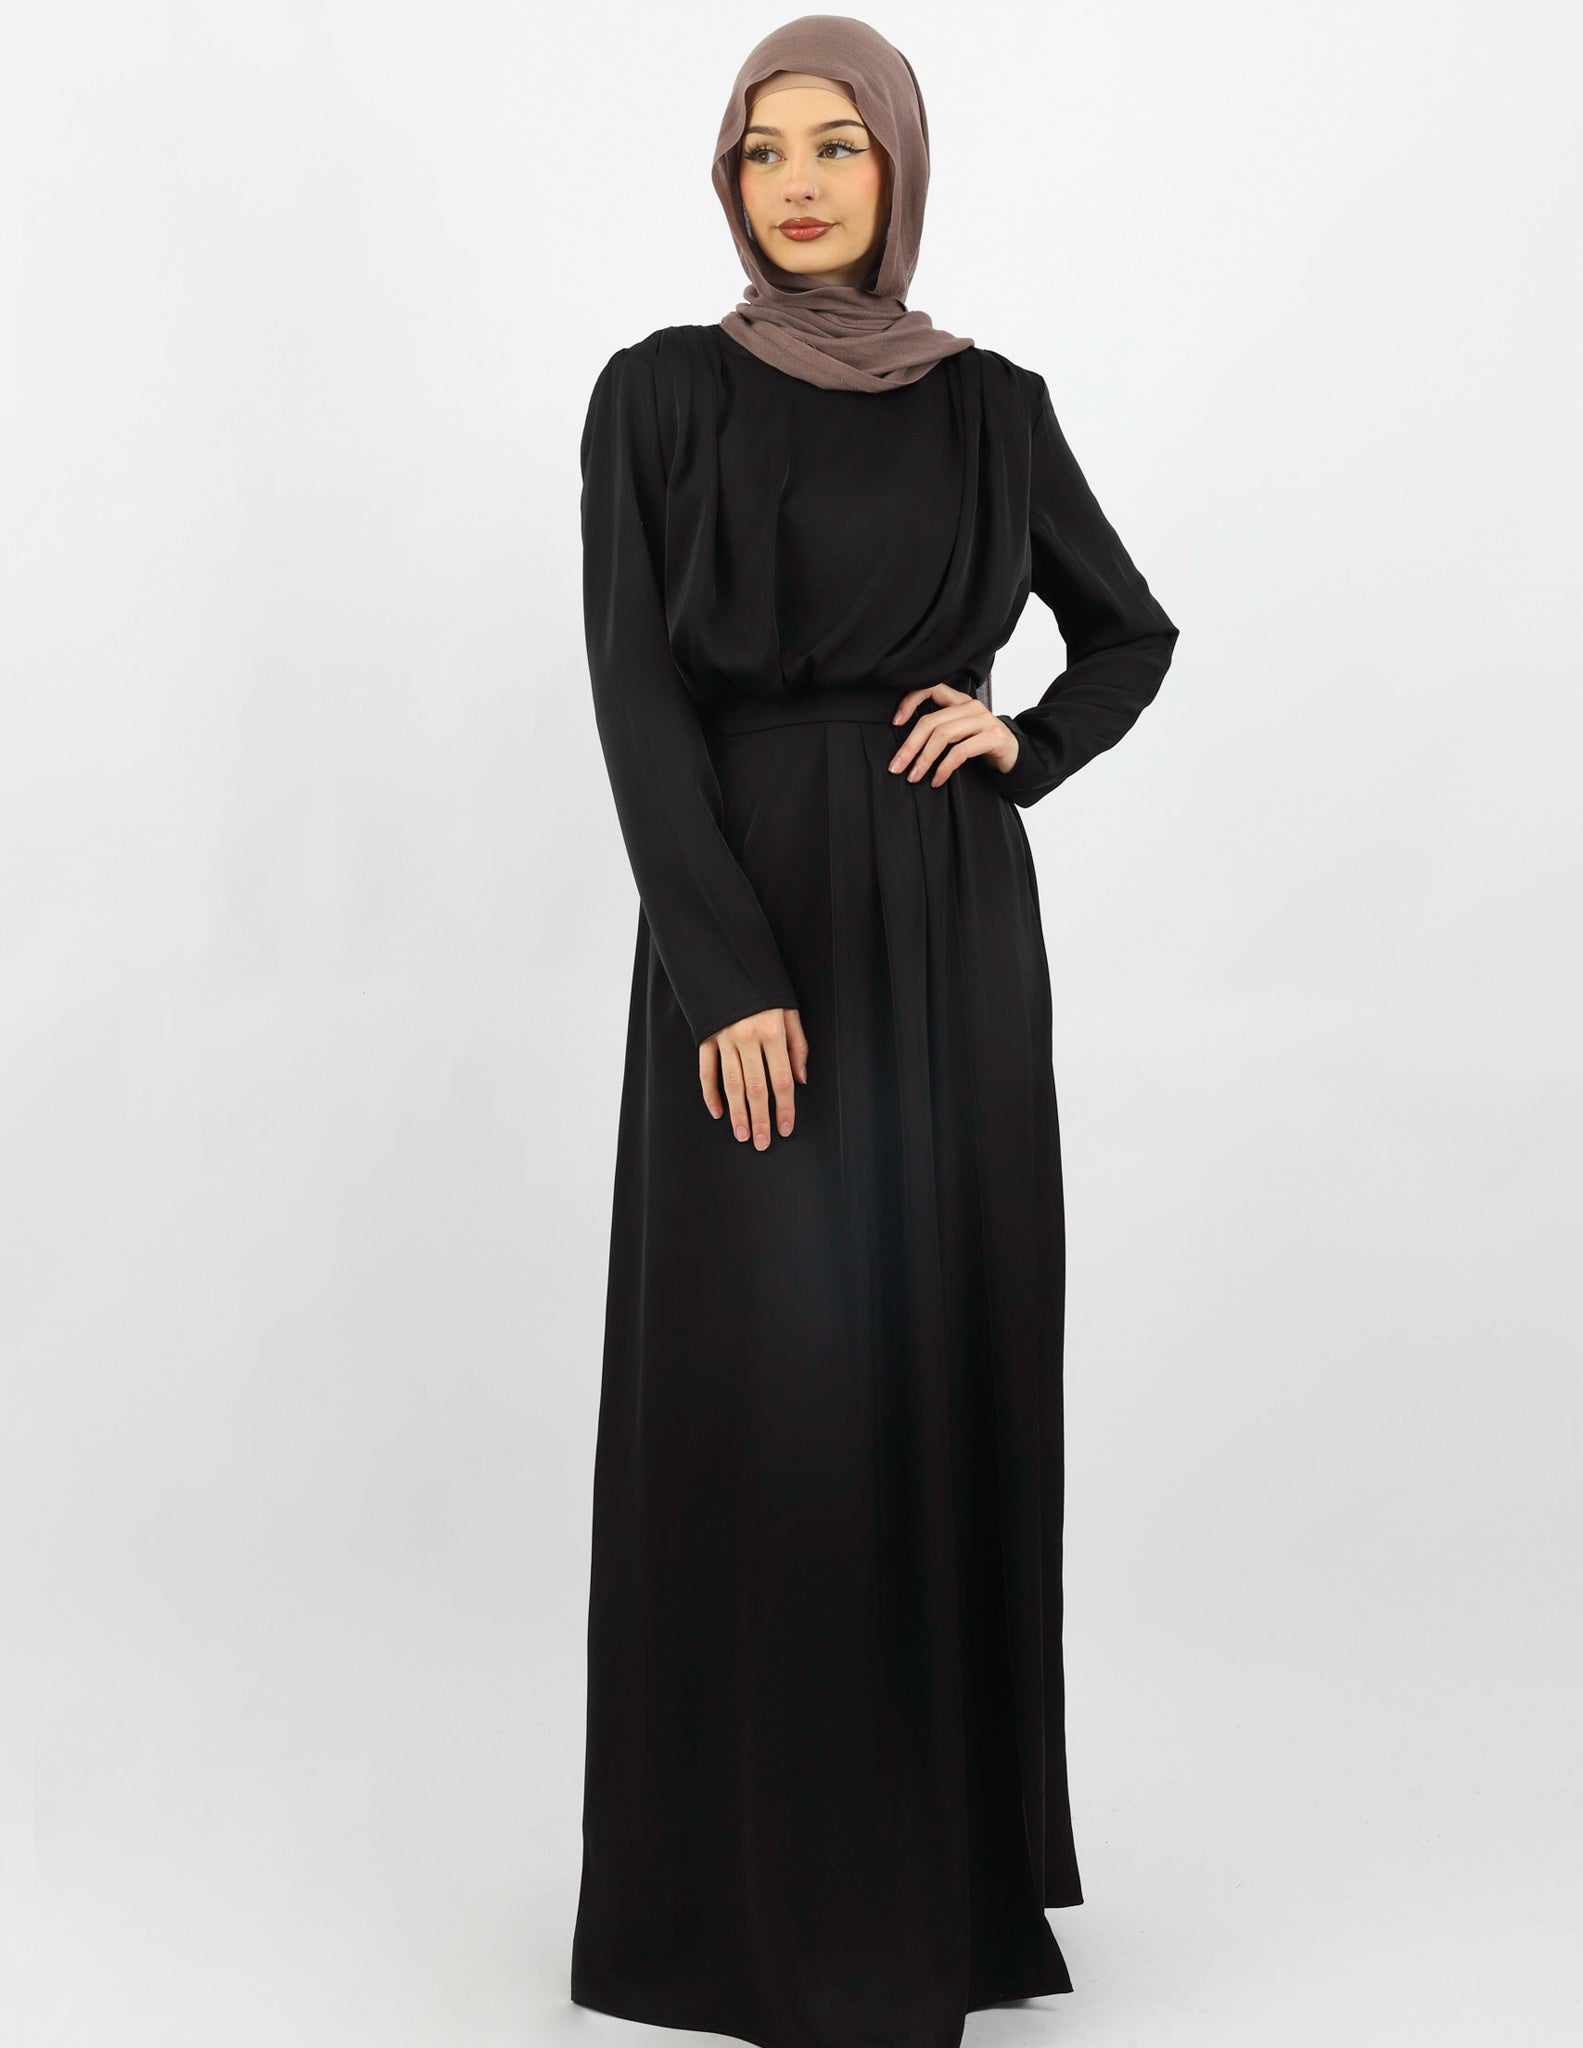 M7861Black-dress-abaya